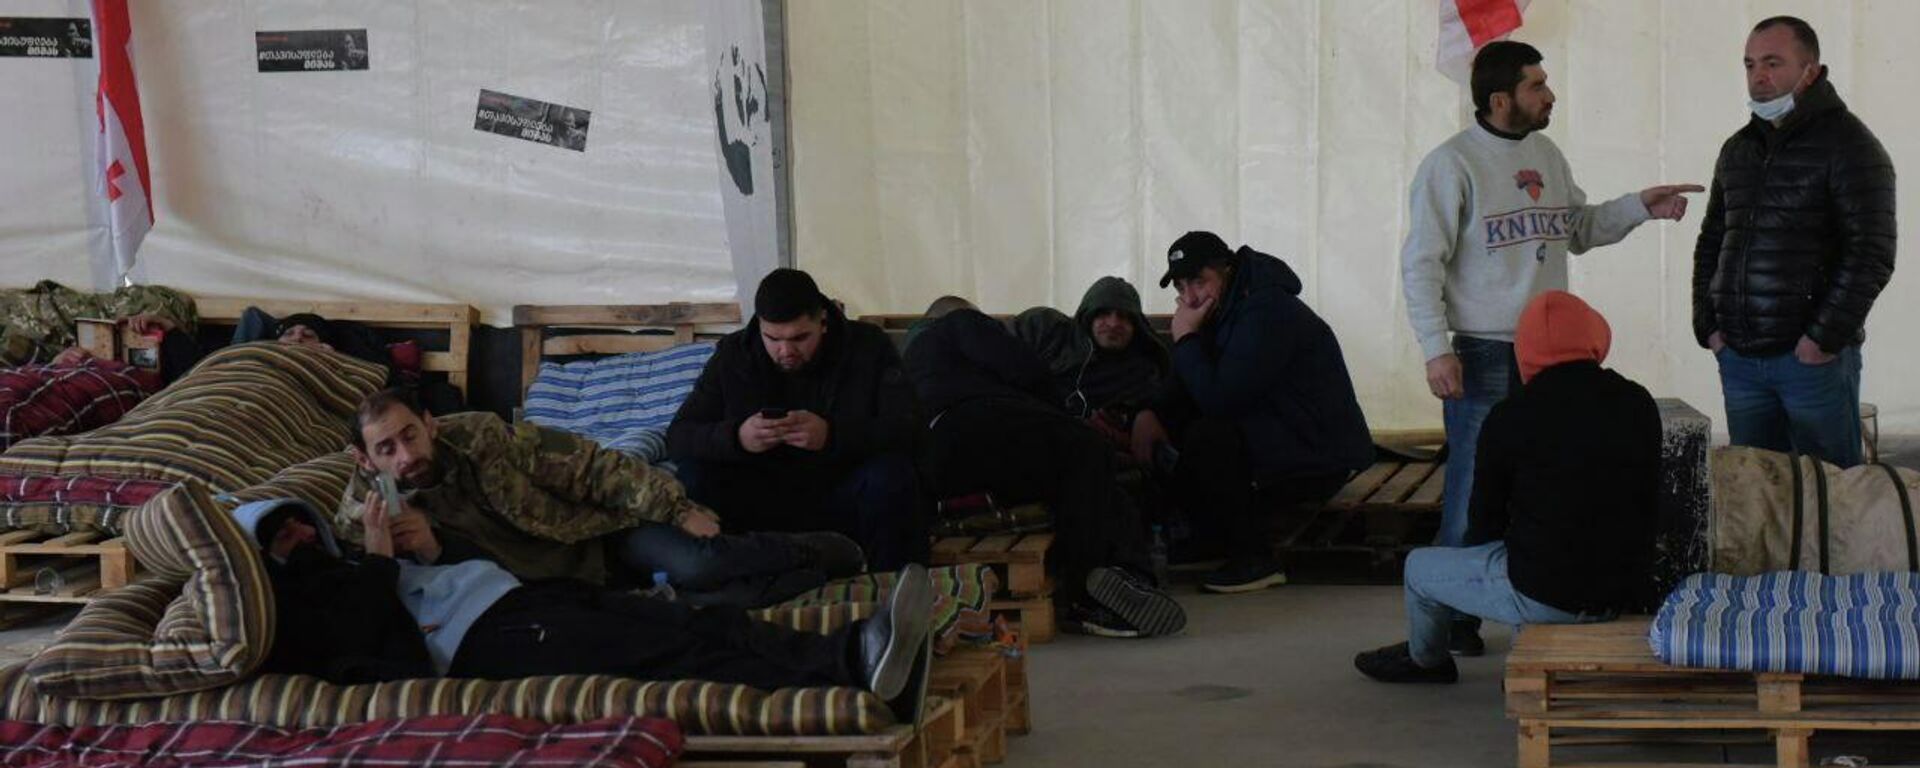 Голодающие в палатках у офиса Единого нацдвижения 22 декабря 2021 года - Sputnik Грузия, 1920, 22.12.2021